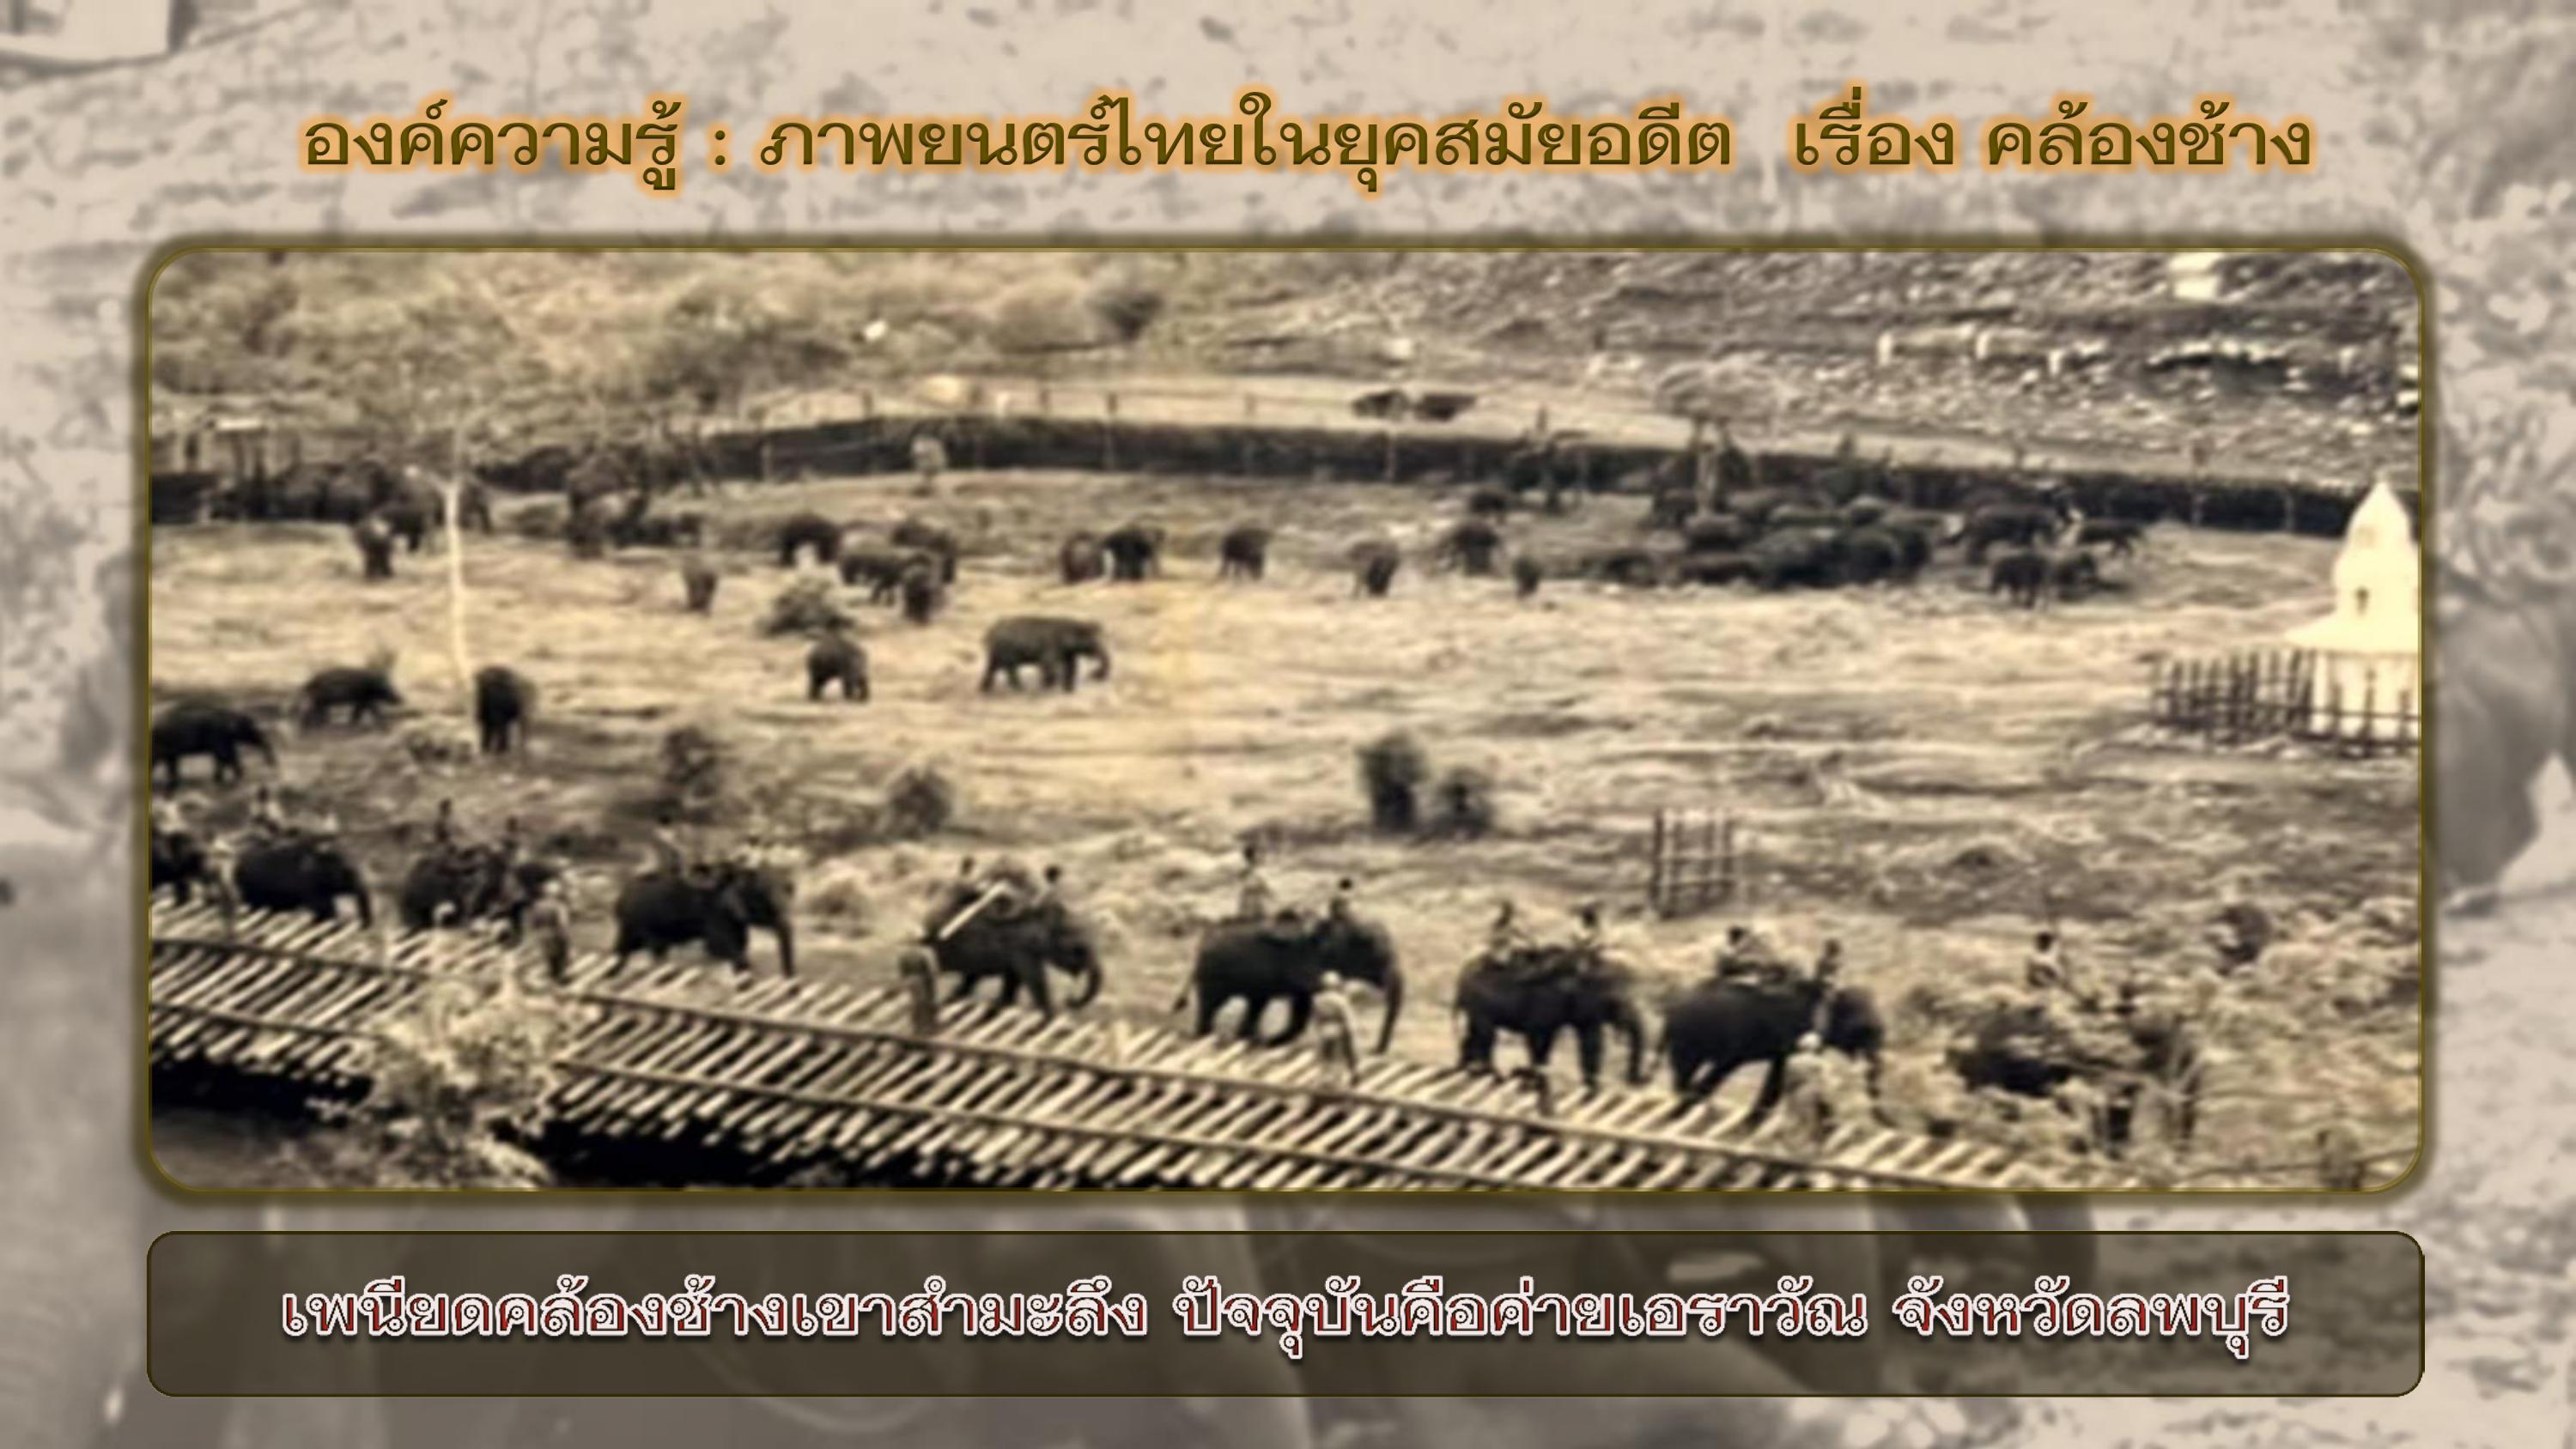 องค์ความรู้ : ภาพยนตร์ไทยในยุคสมัยอดีต  เรื่อง คล้องช้าง